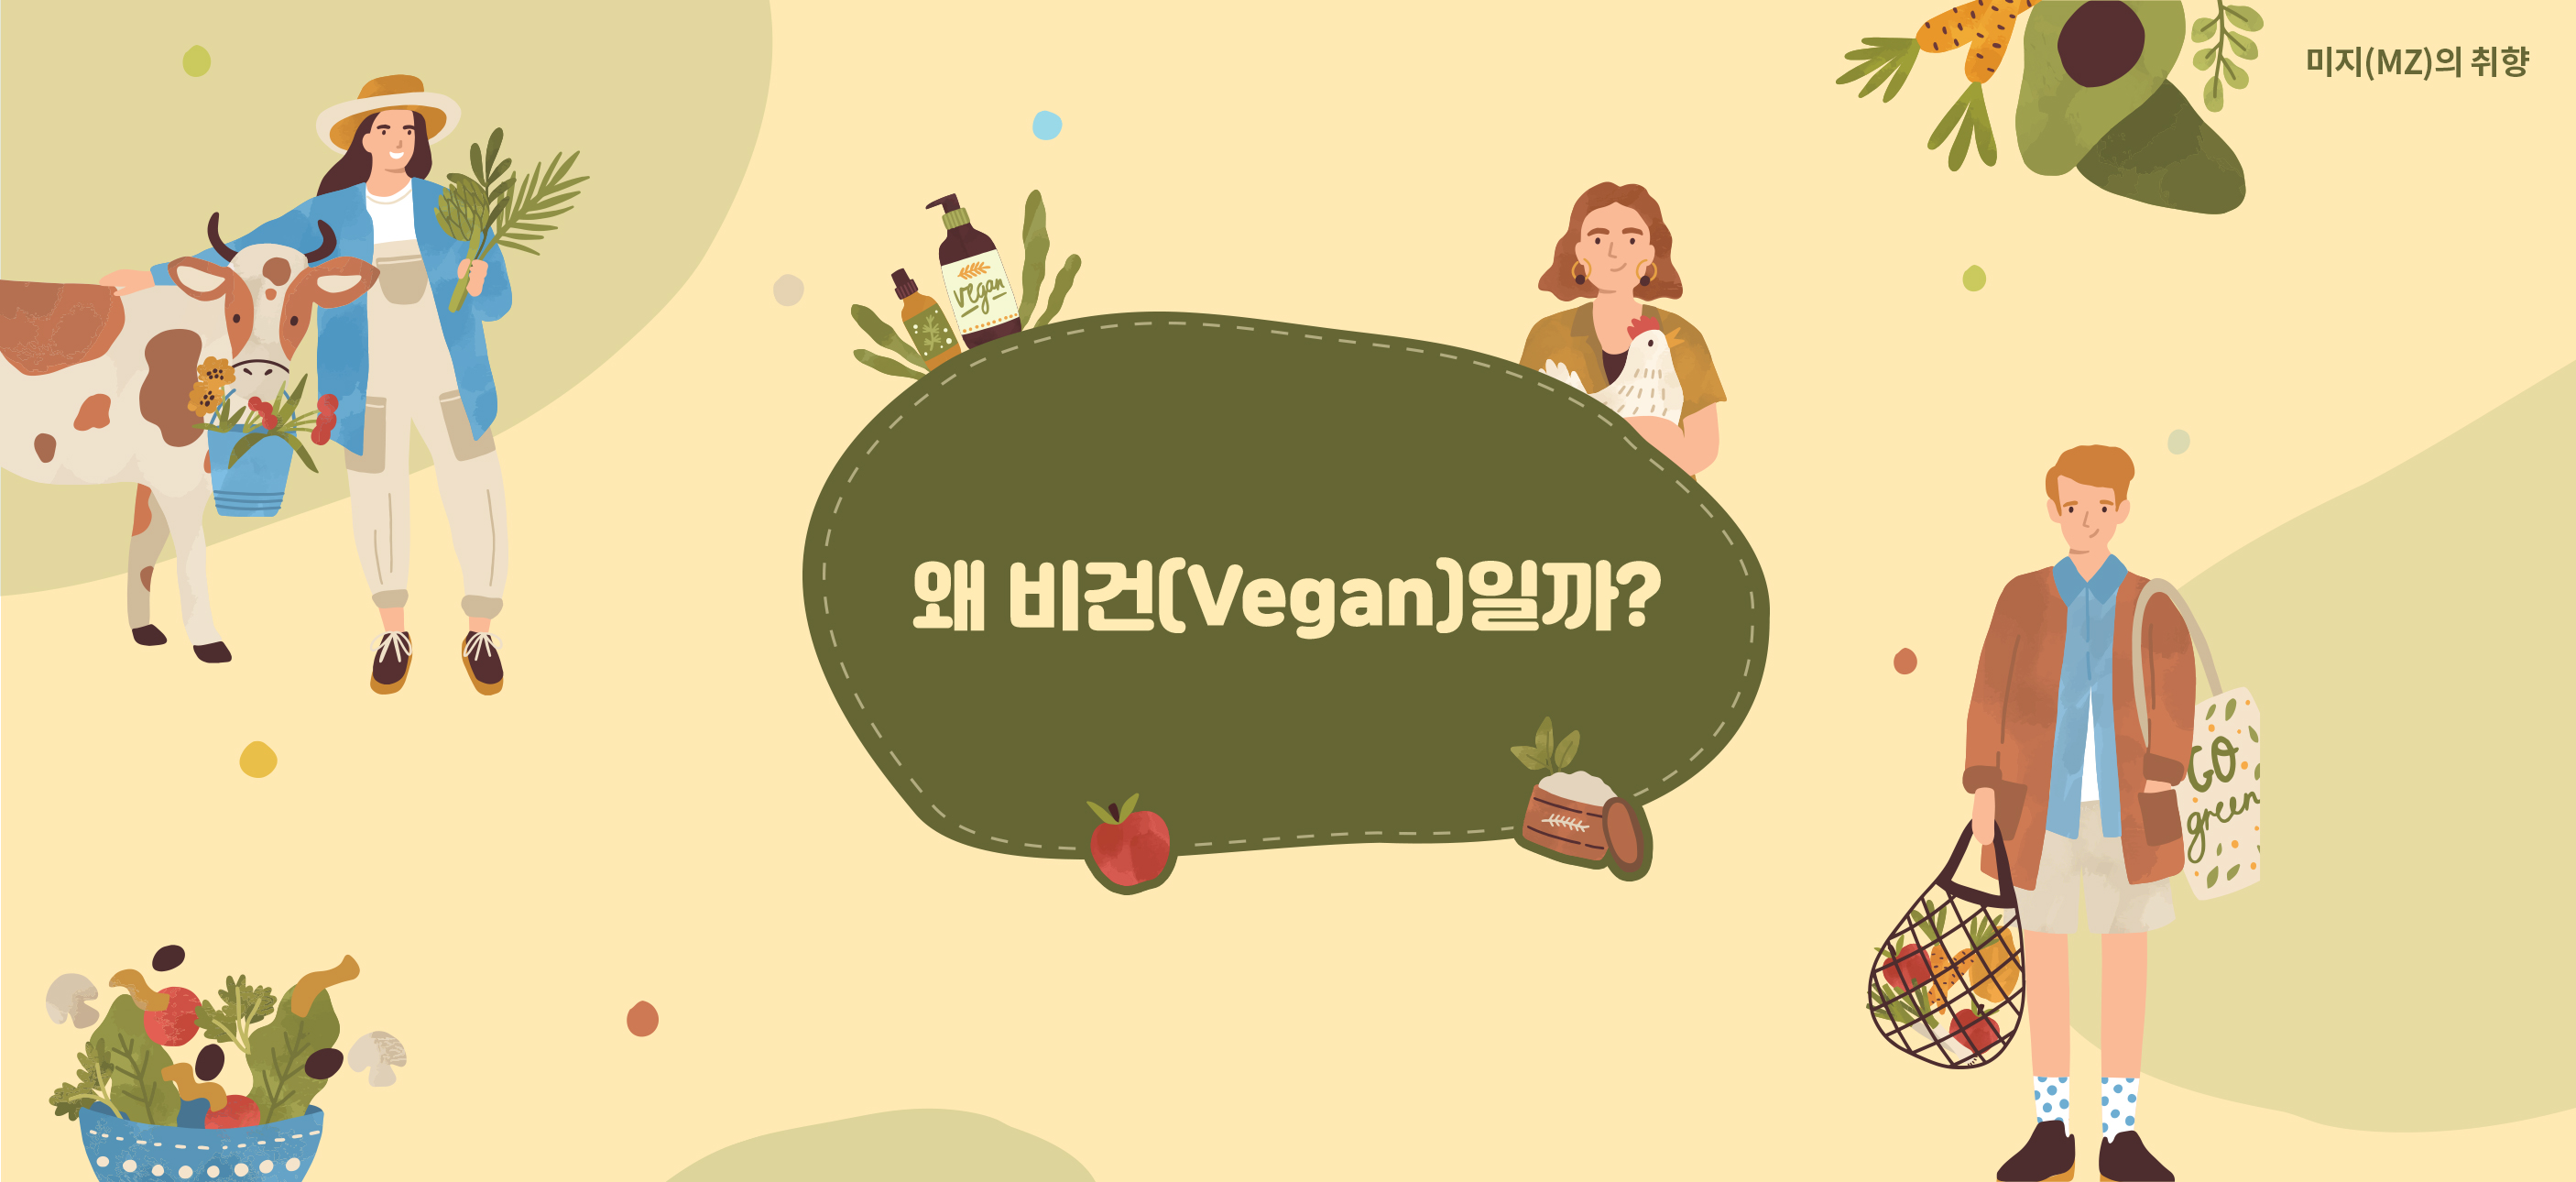 왜 비건(Vegan)일까?